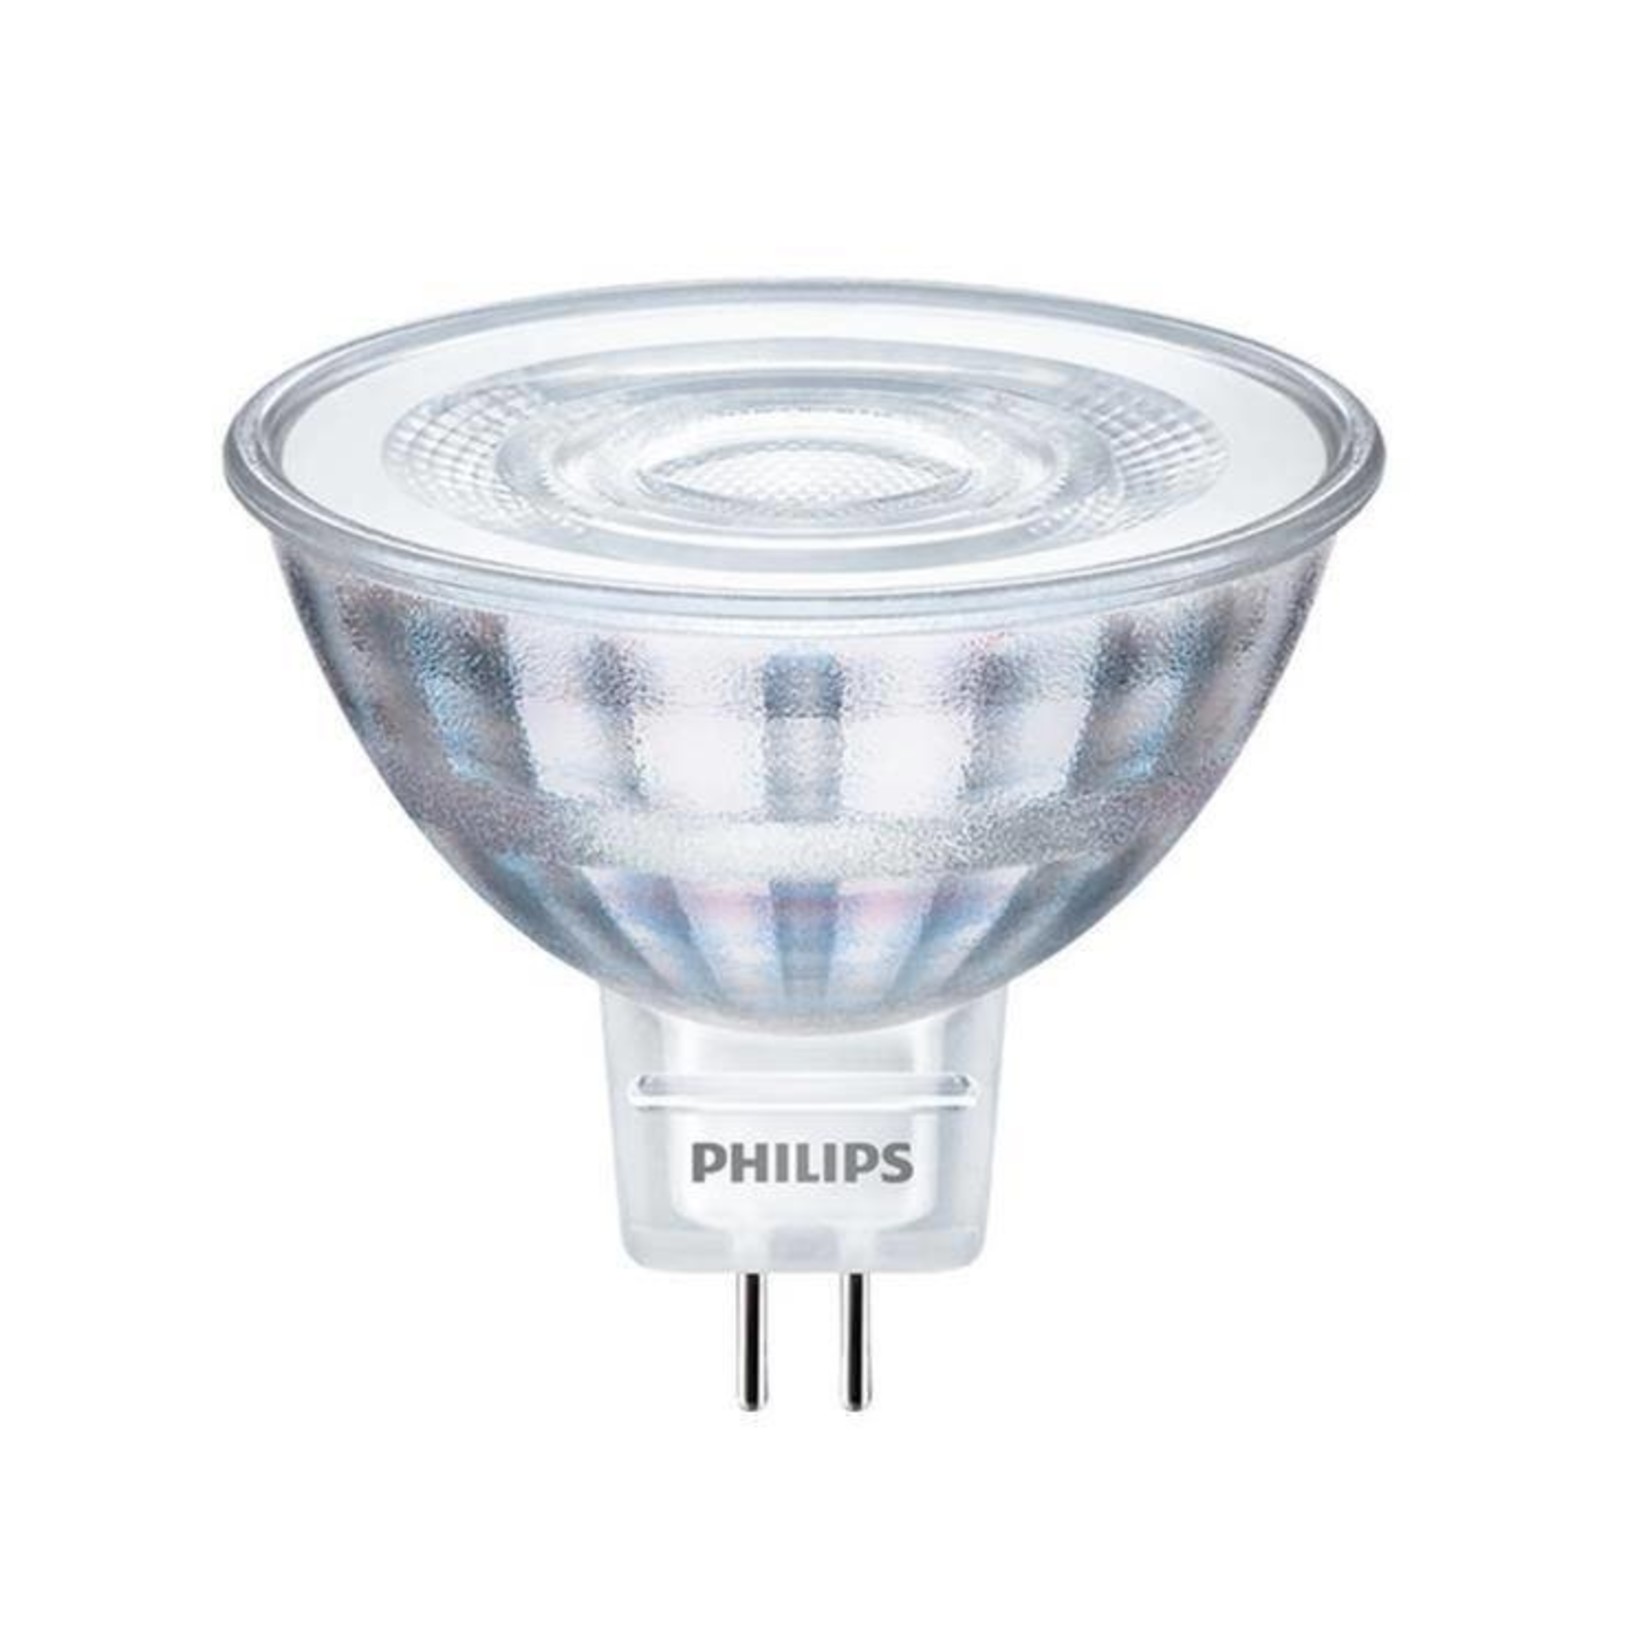 Светодиодные филипс купить. Philips gu5.3 3w. Лампа Philips gu 5.3 12v led. Лампа светодиодная Philips led 2700k, gu5.3, mr16, 5.5Вт. Лампа светодиодная Philips led 2700k, gu5.3, mr16, 5вт.